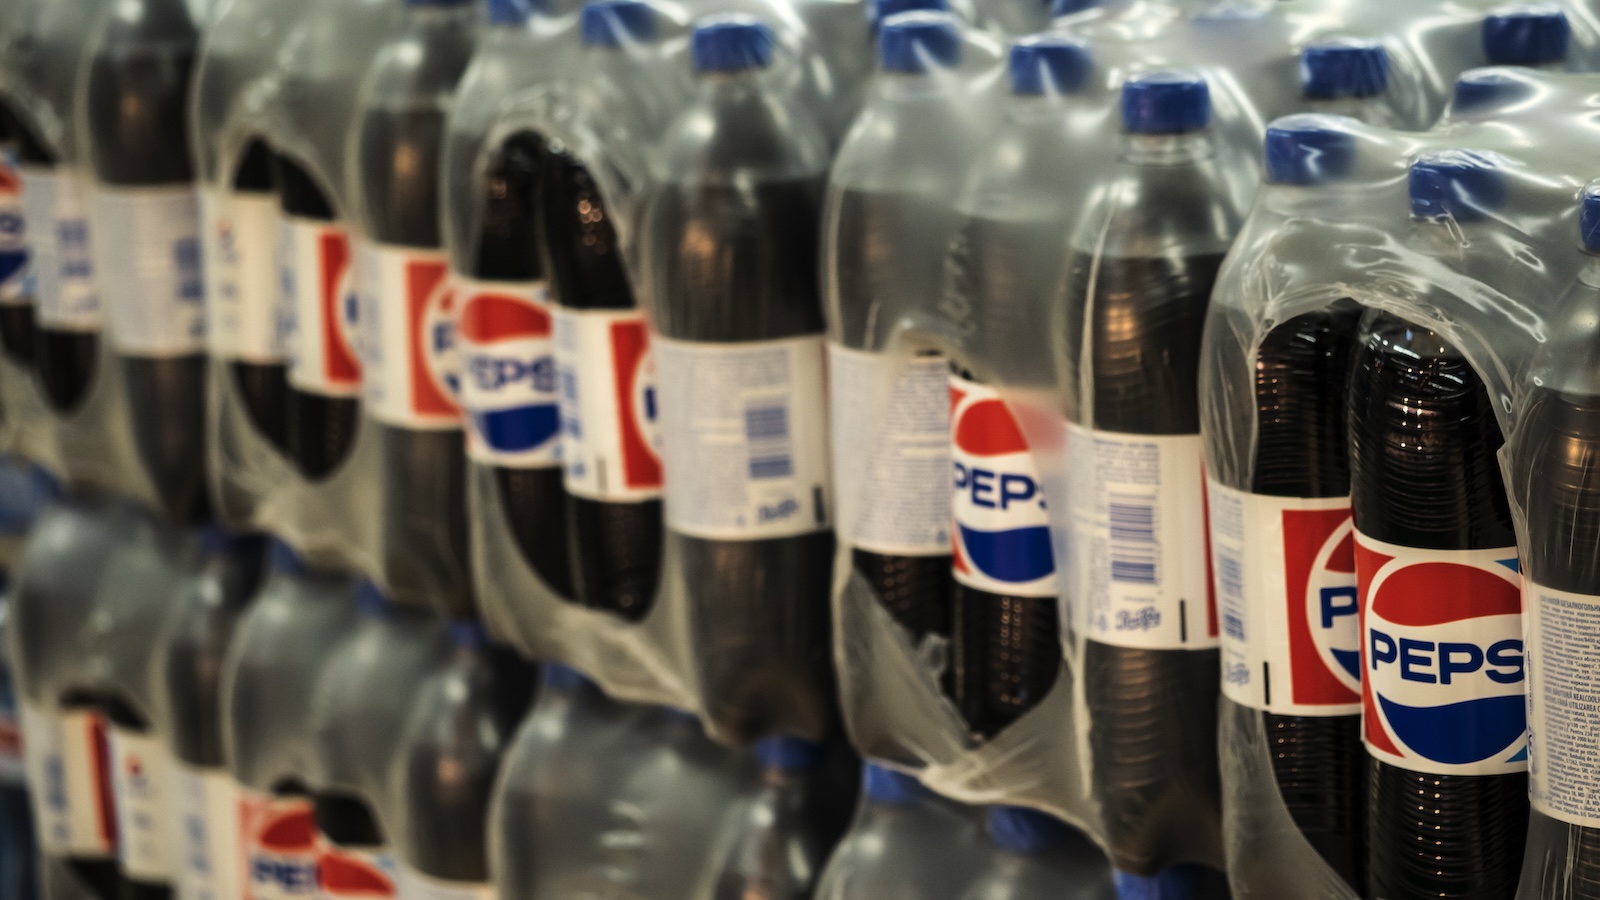 cases of Pepsi bottles